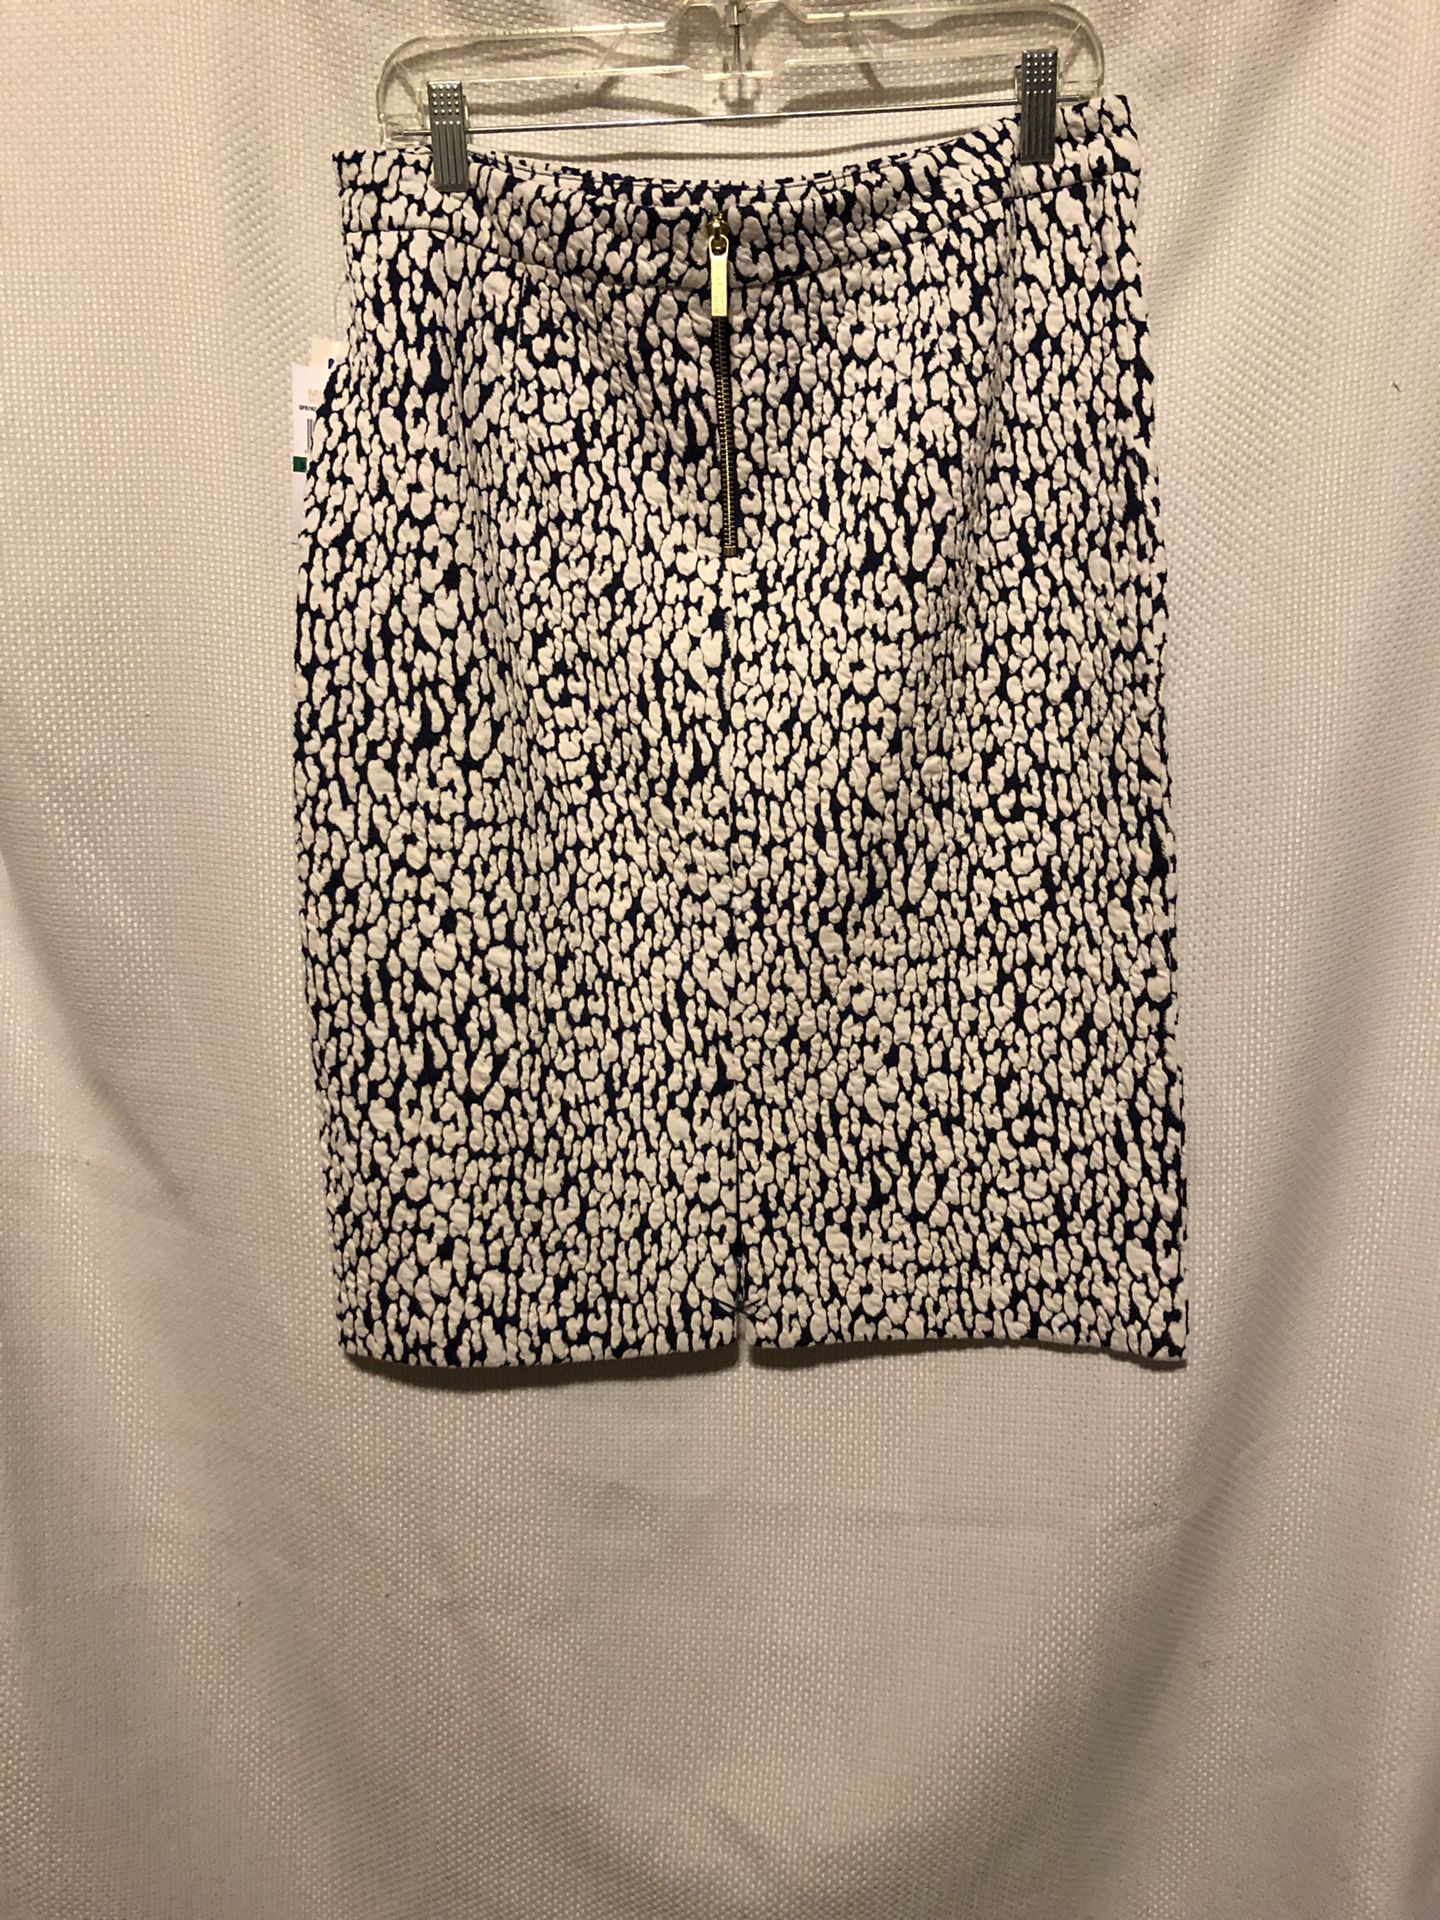 Michael Kors Leopard Pencil Skirt